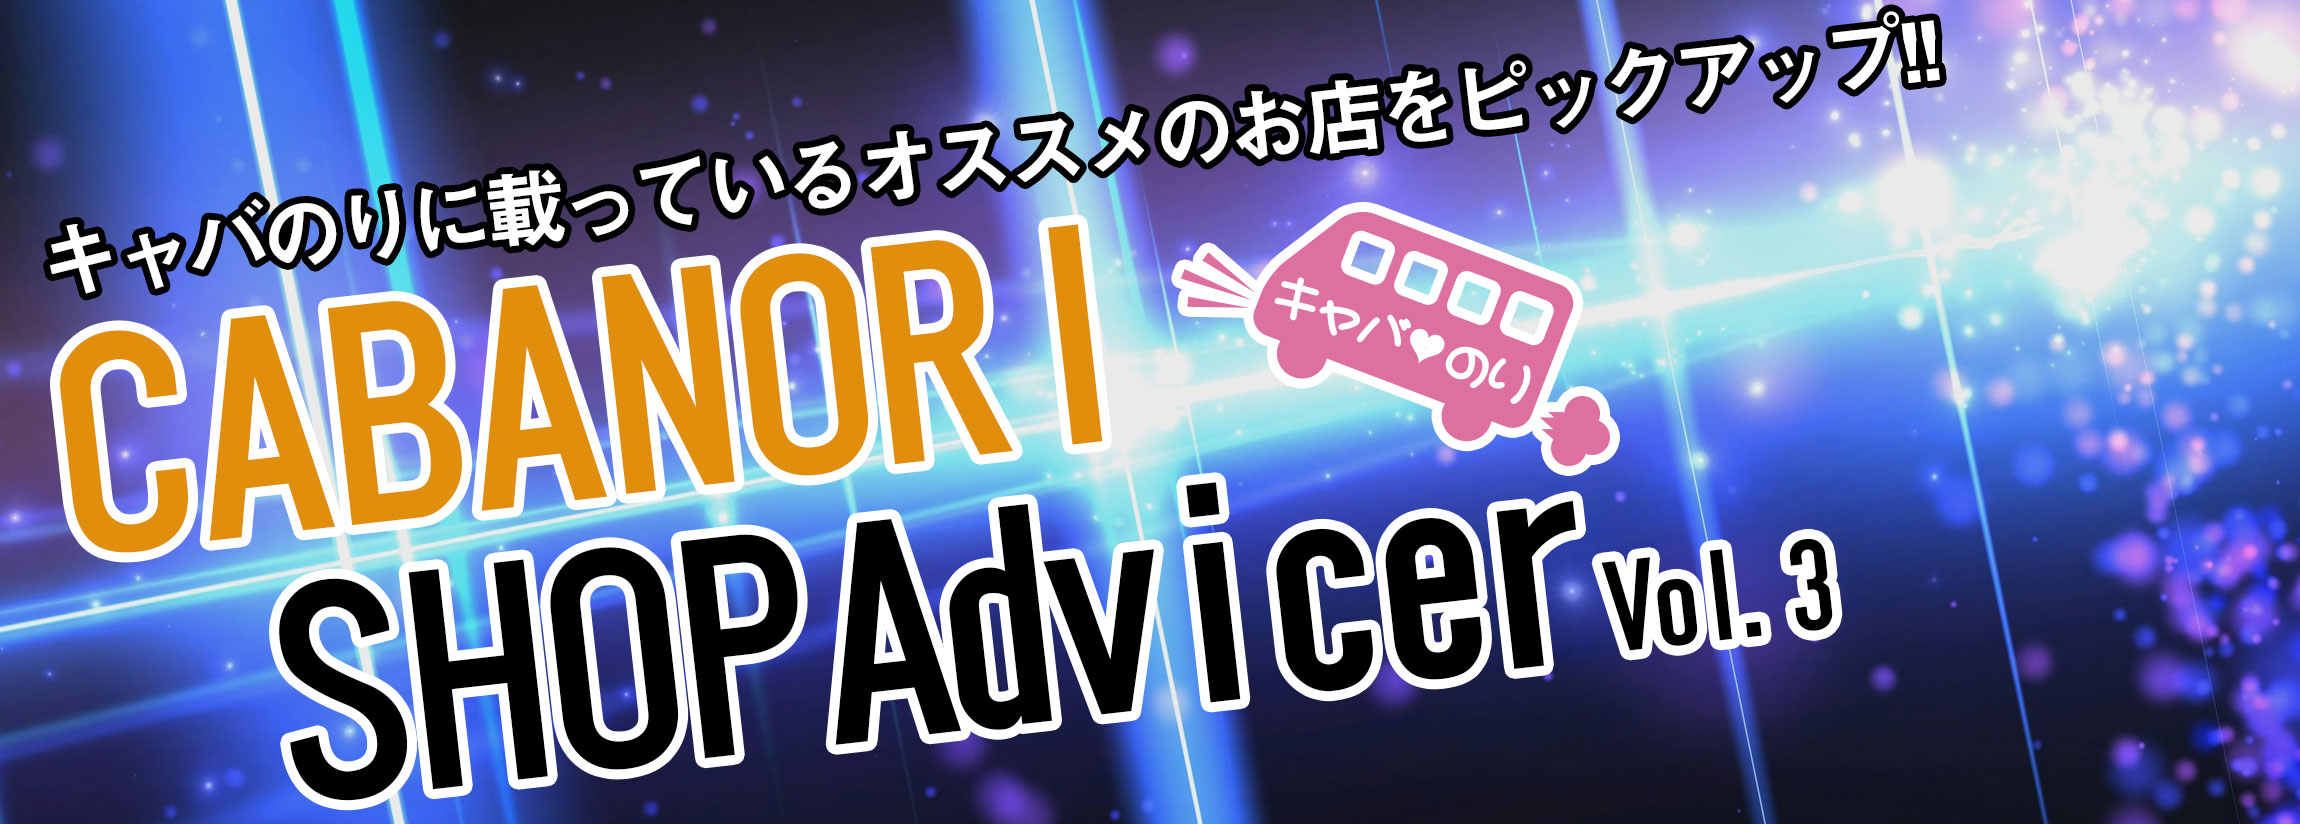 【オススメ】CABANORI Shop Advicer Vol.3【ショップ紹介】